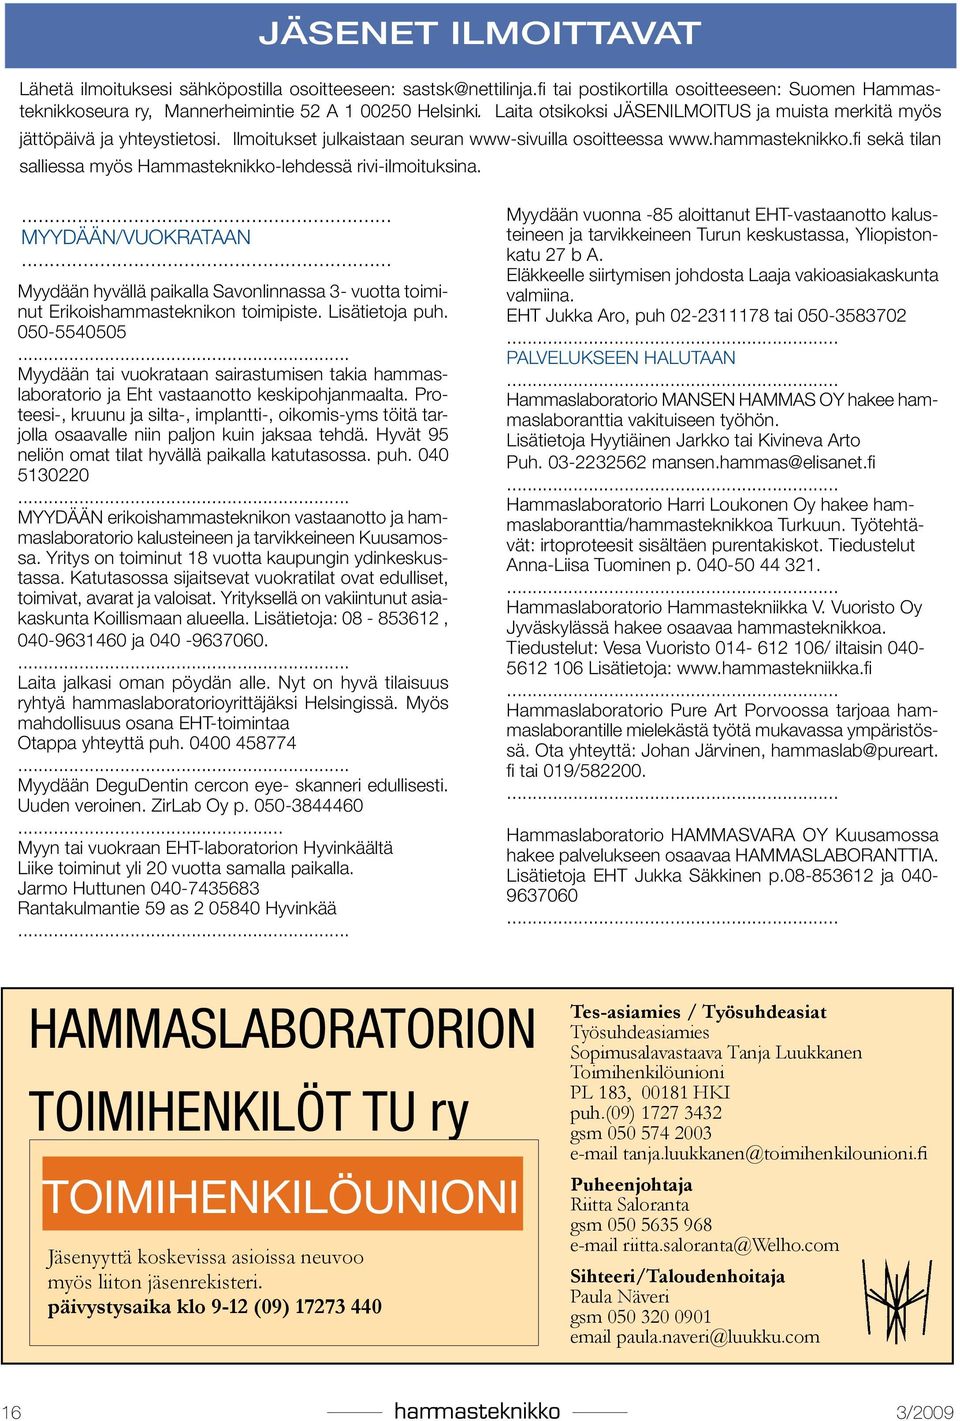 fi sekä tilan salliessa myös Hammasteknikko-lehdessä rivi-ilmoituksina.... MYYDÄÄN/VUOKRATAAN... Myydään hyvällä paikalla Savonlinnassa 3- vuotta toiminut Erikoishammasteknikon toimipiste.